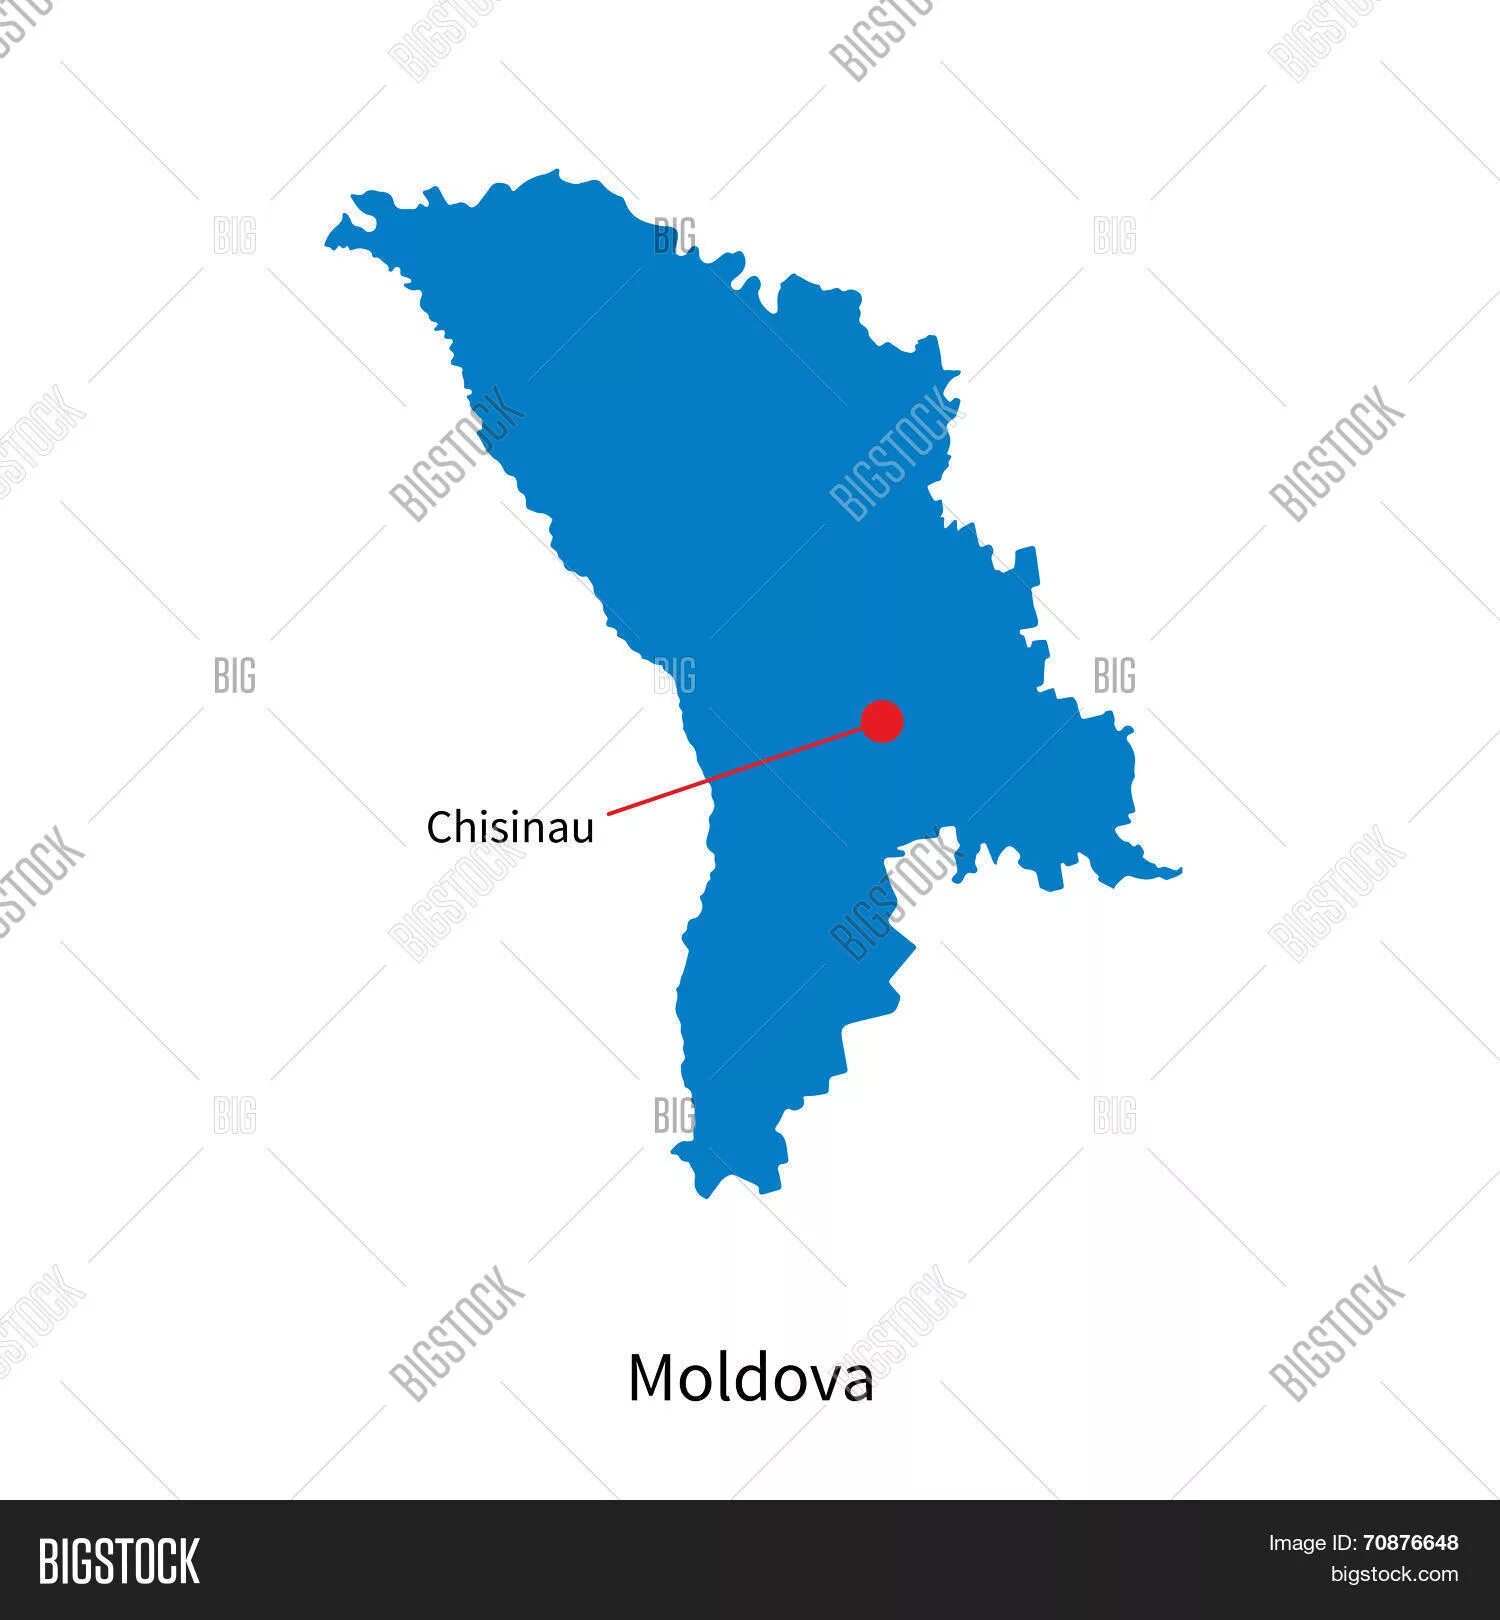 Контур Молдавии. Очертания Молдовы. Карта Молдавии вектор. Карта Молдовы вектор. Кишинев республика молдова